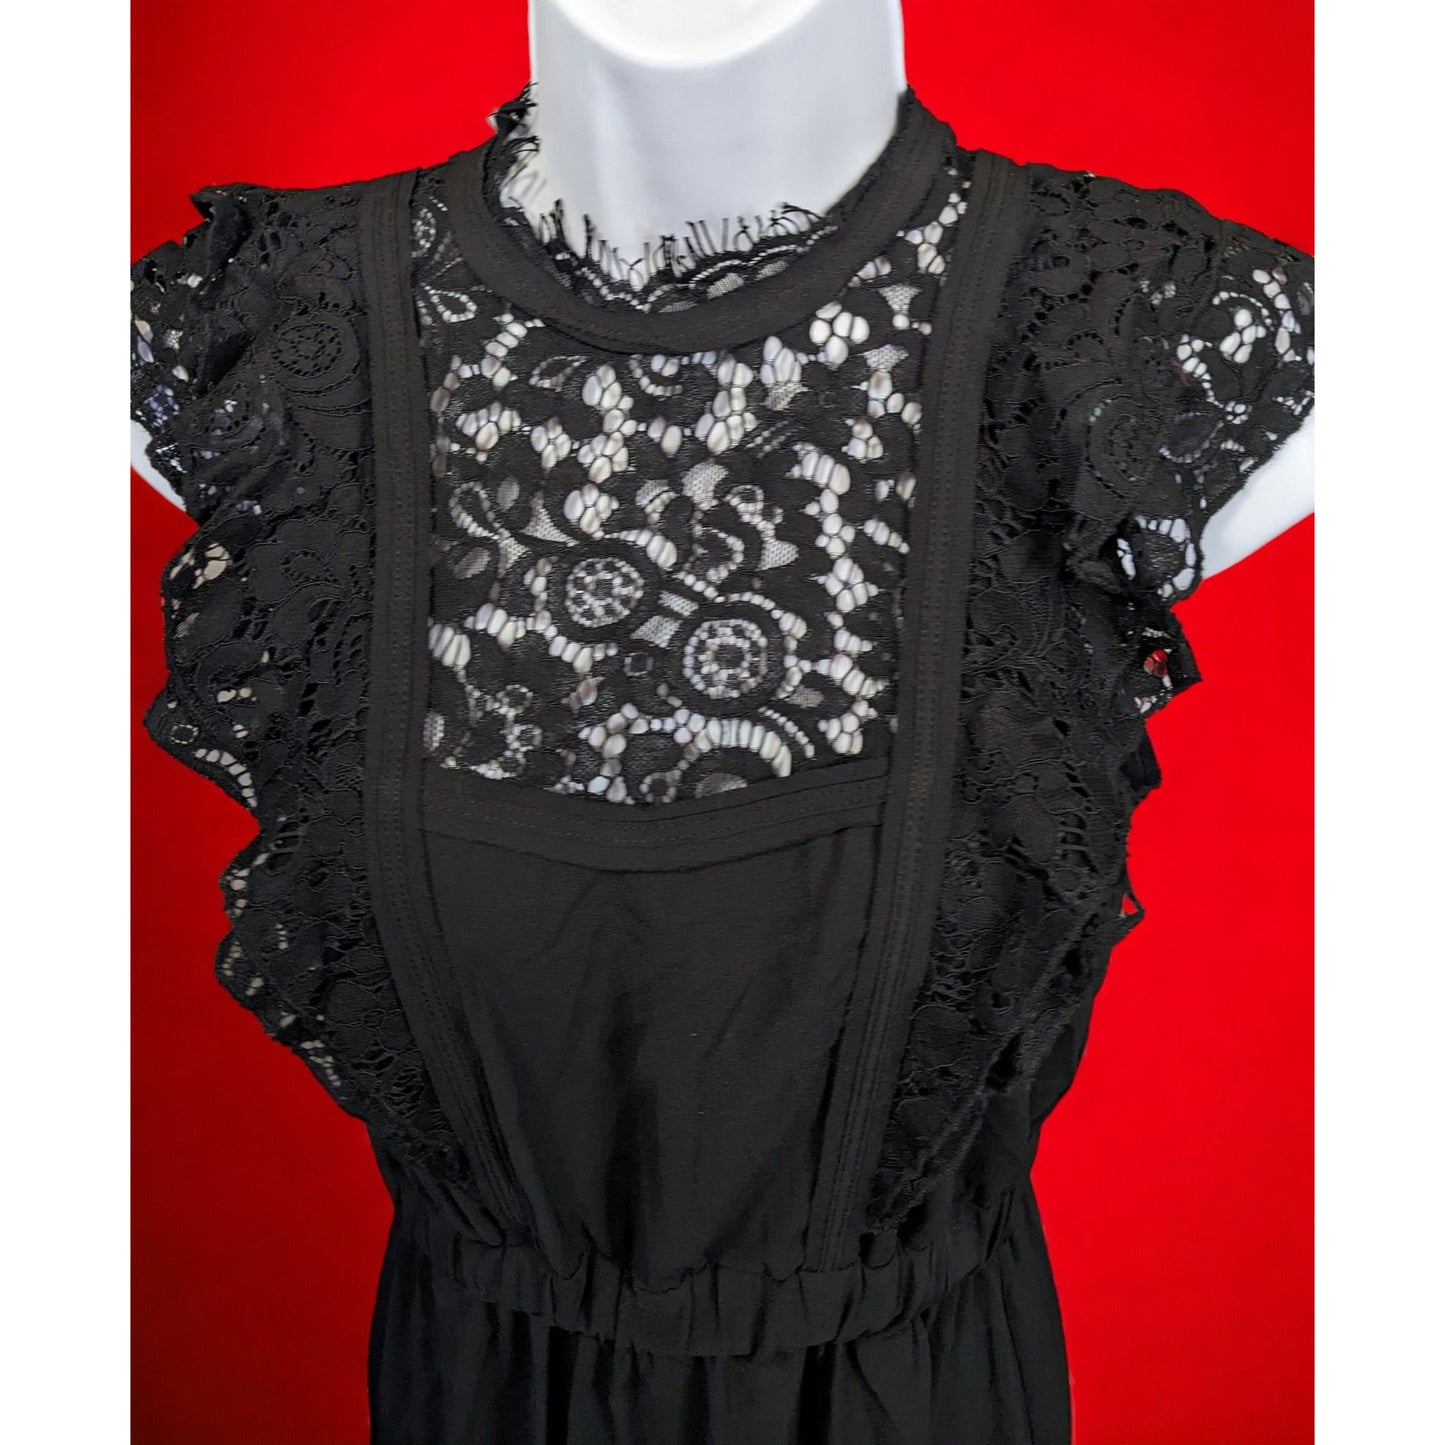 H&M Lace Front Black Dress